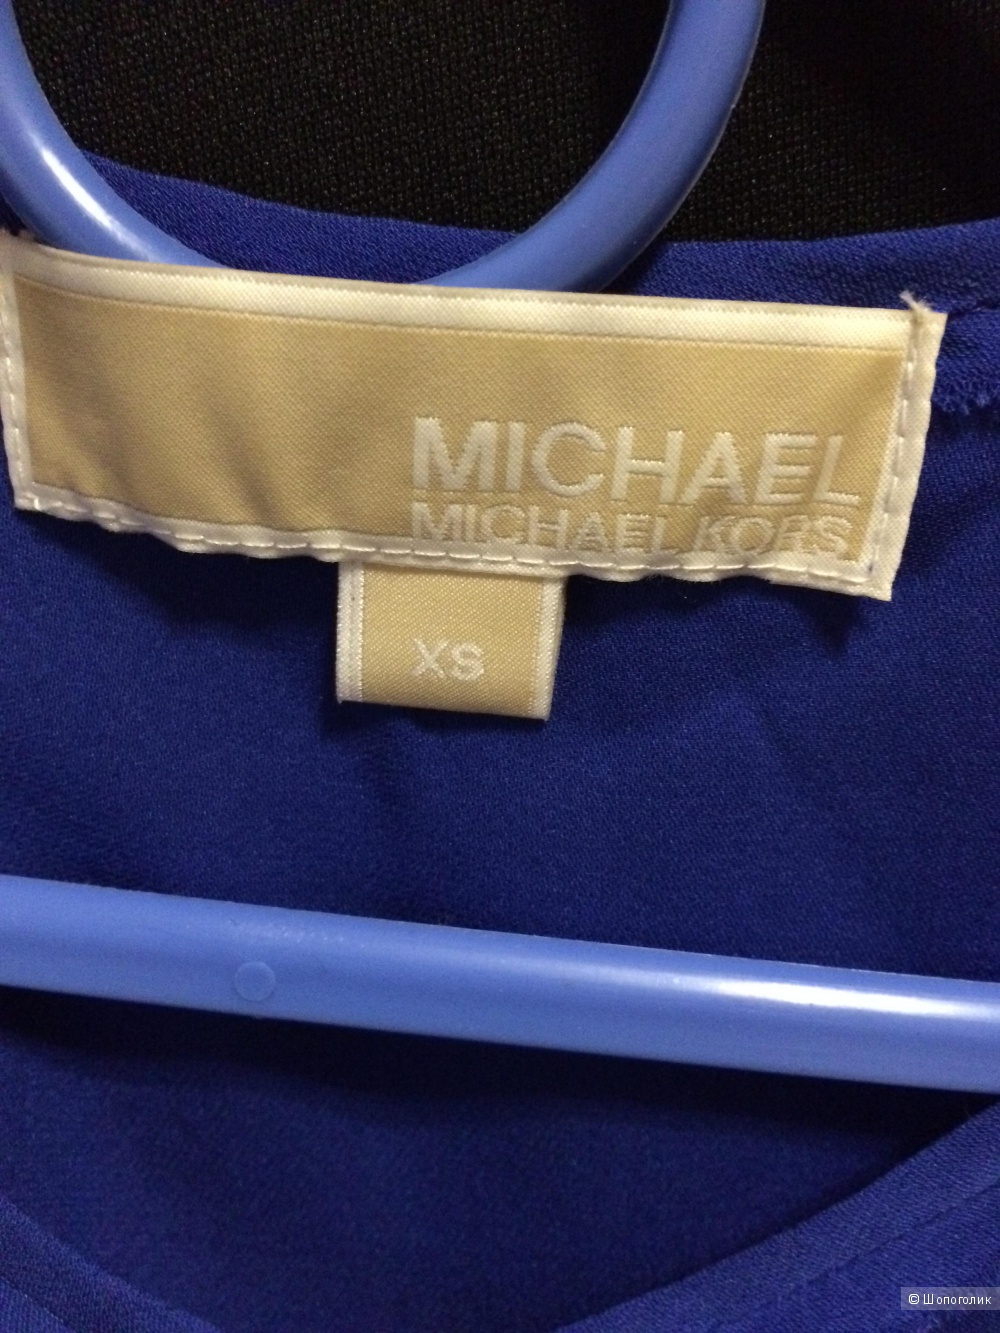 Шелковая рубашка  MICHAEL  MICHAEL KORS  xs